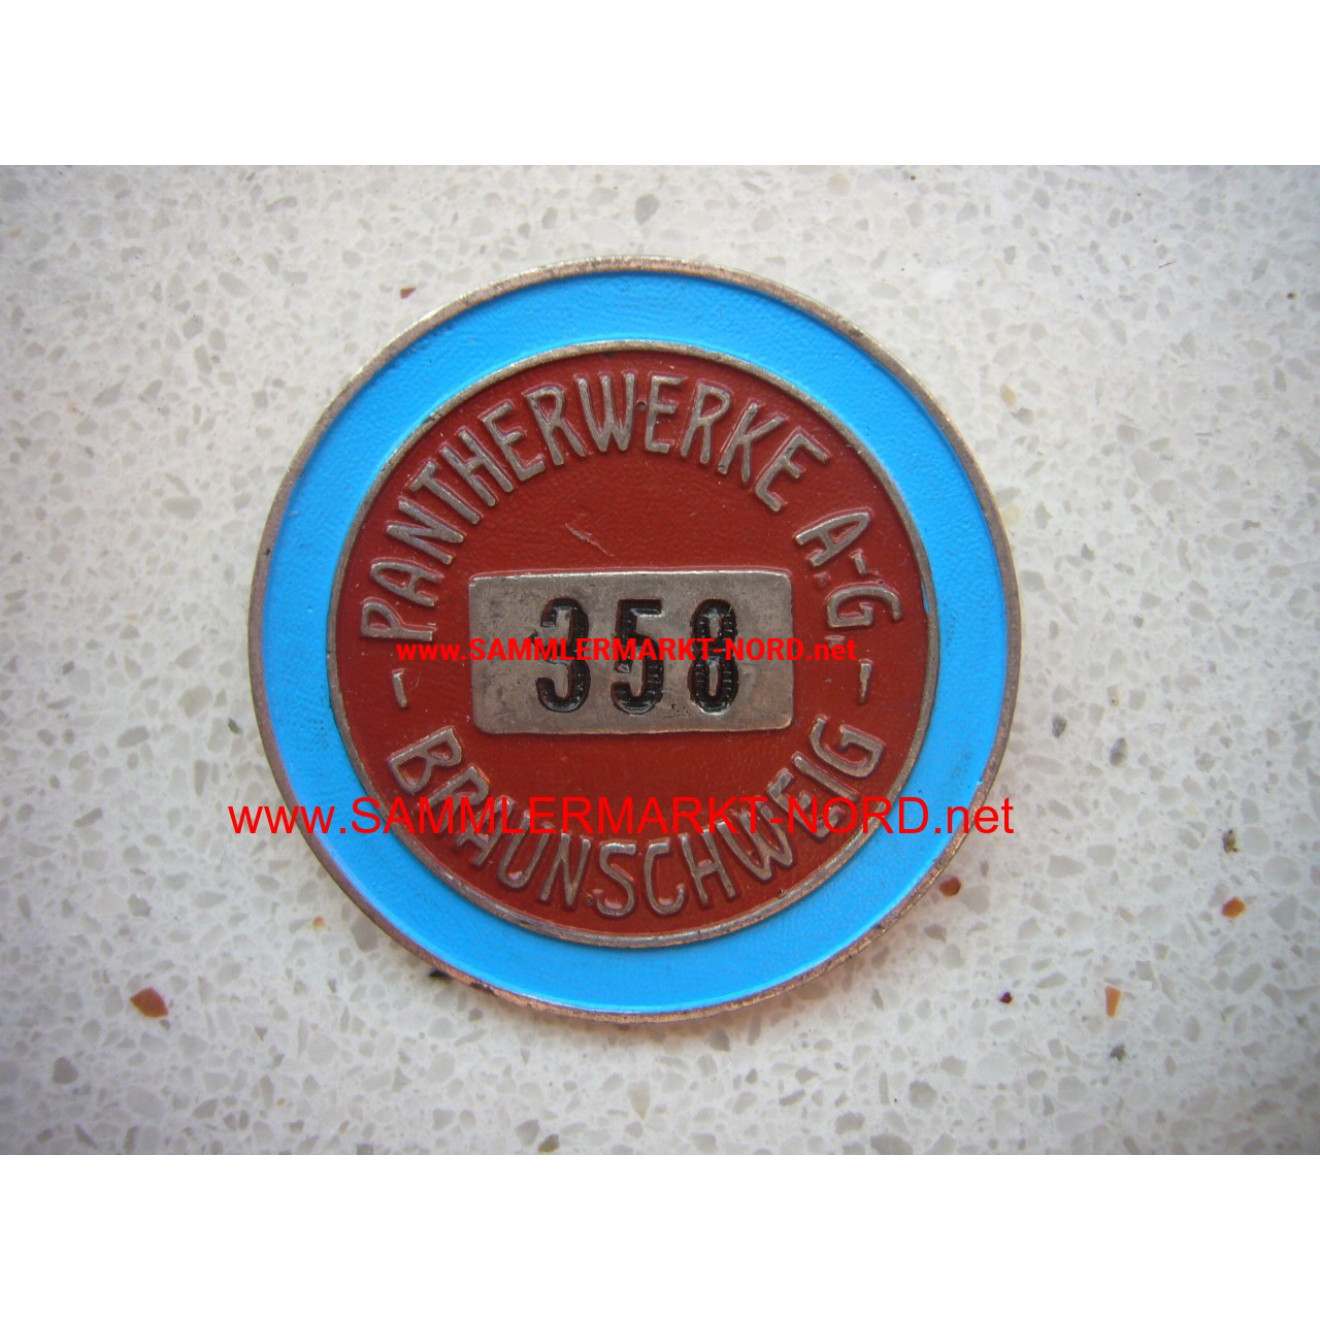 Pantherwerke AG Braunschweig - ID Badge